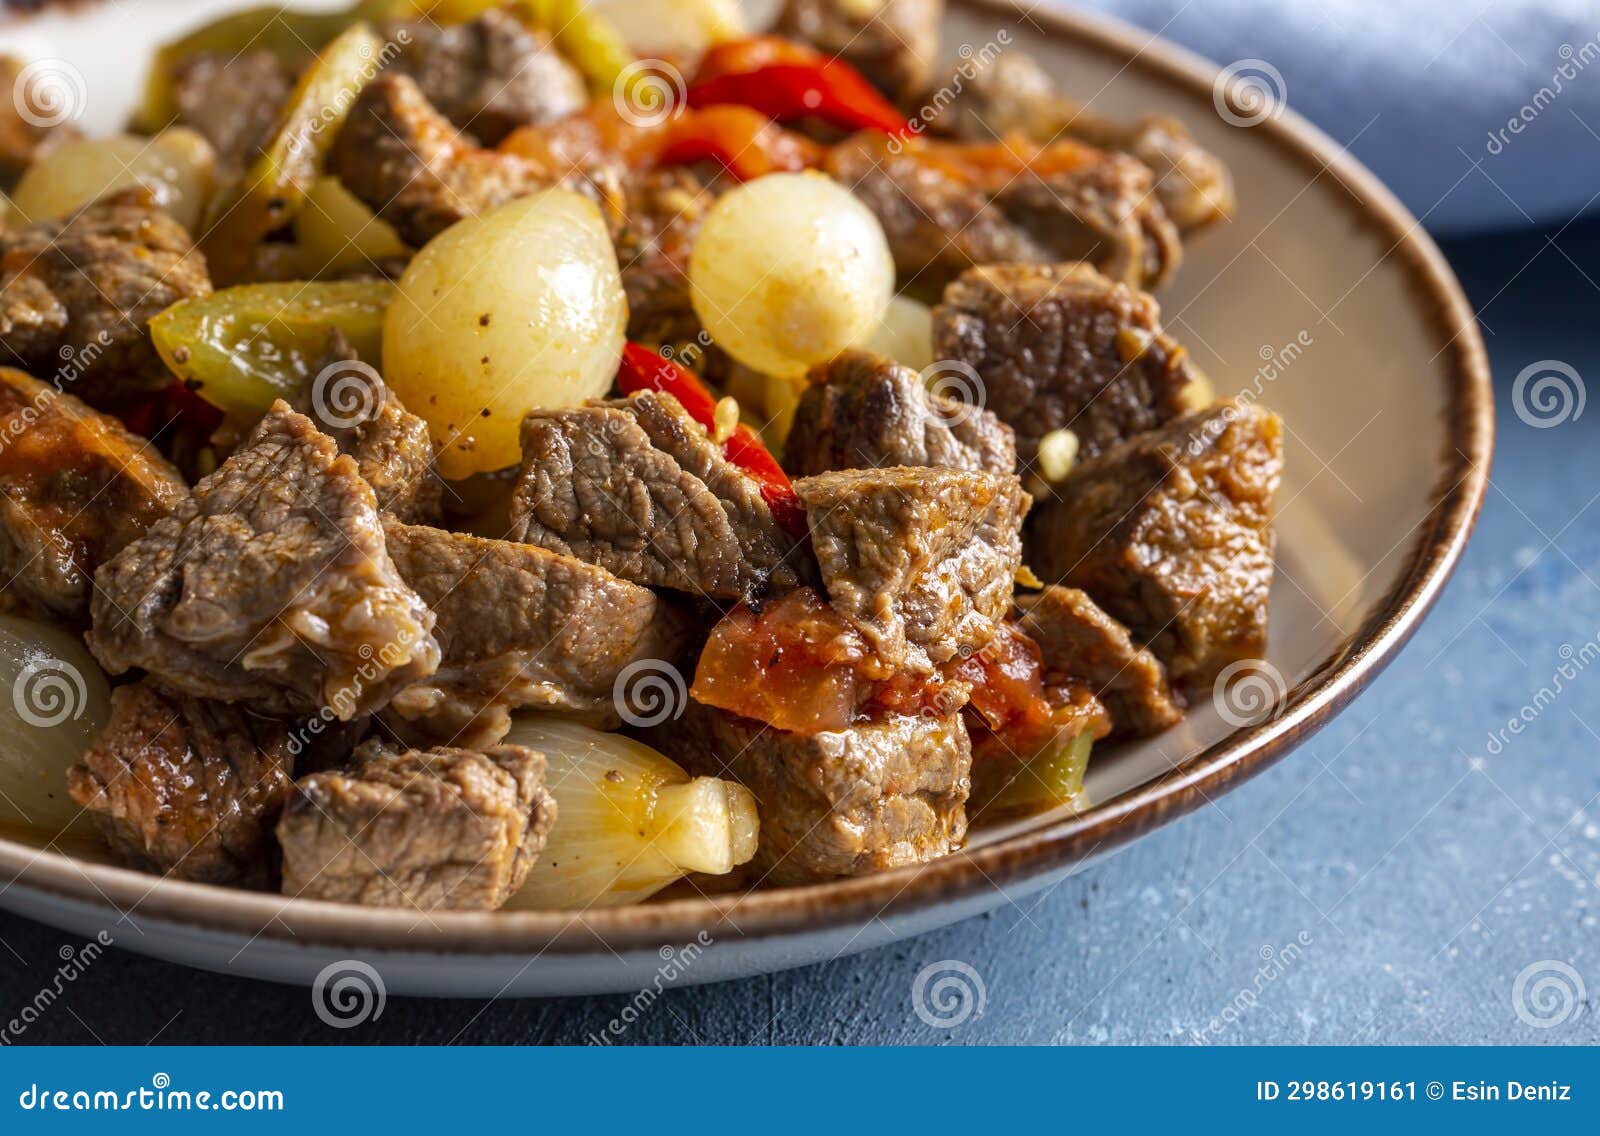 comida tradicional turca con deliciosa carne estofado de cebolla con carne - nombre turco etli sogan yahnisi, et kavurma